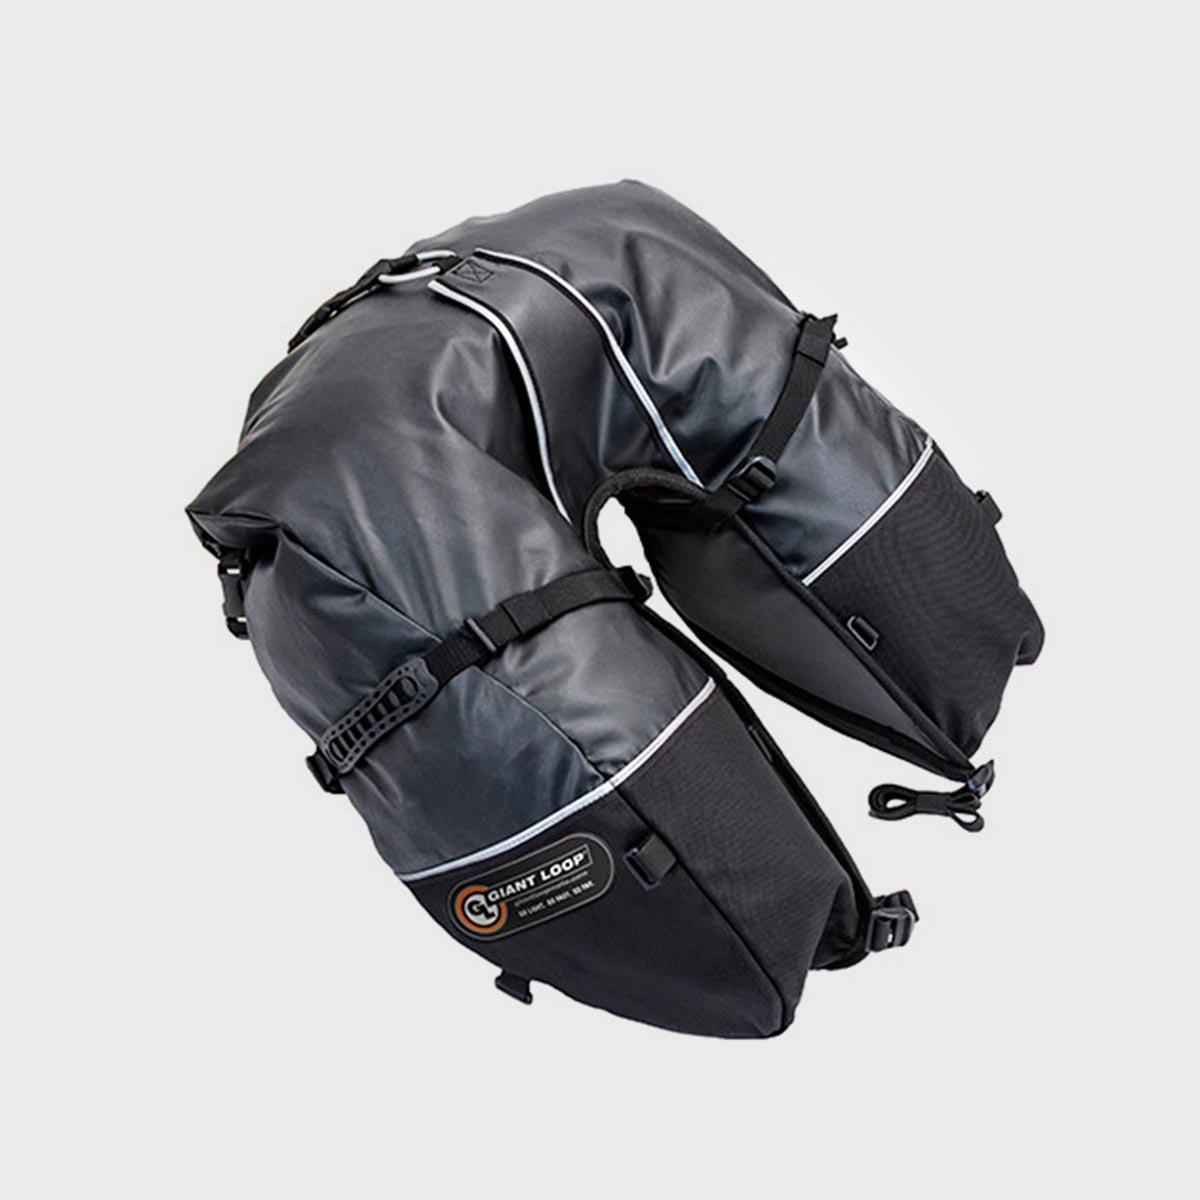  Giant Loop Tillamook Dry Bag, Waterproof Motorbike